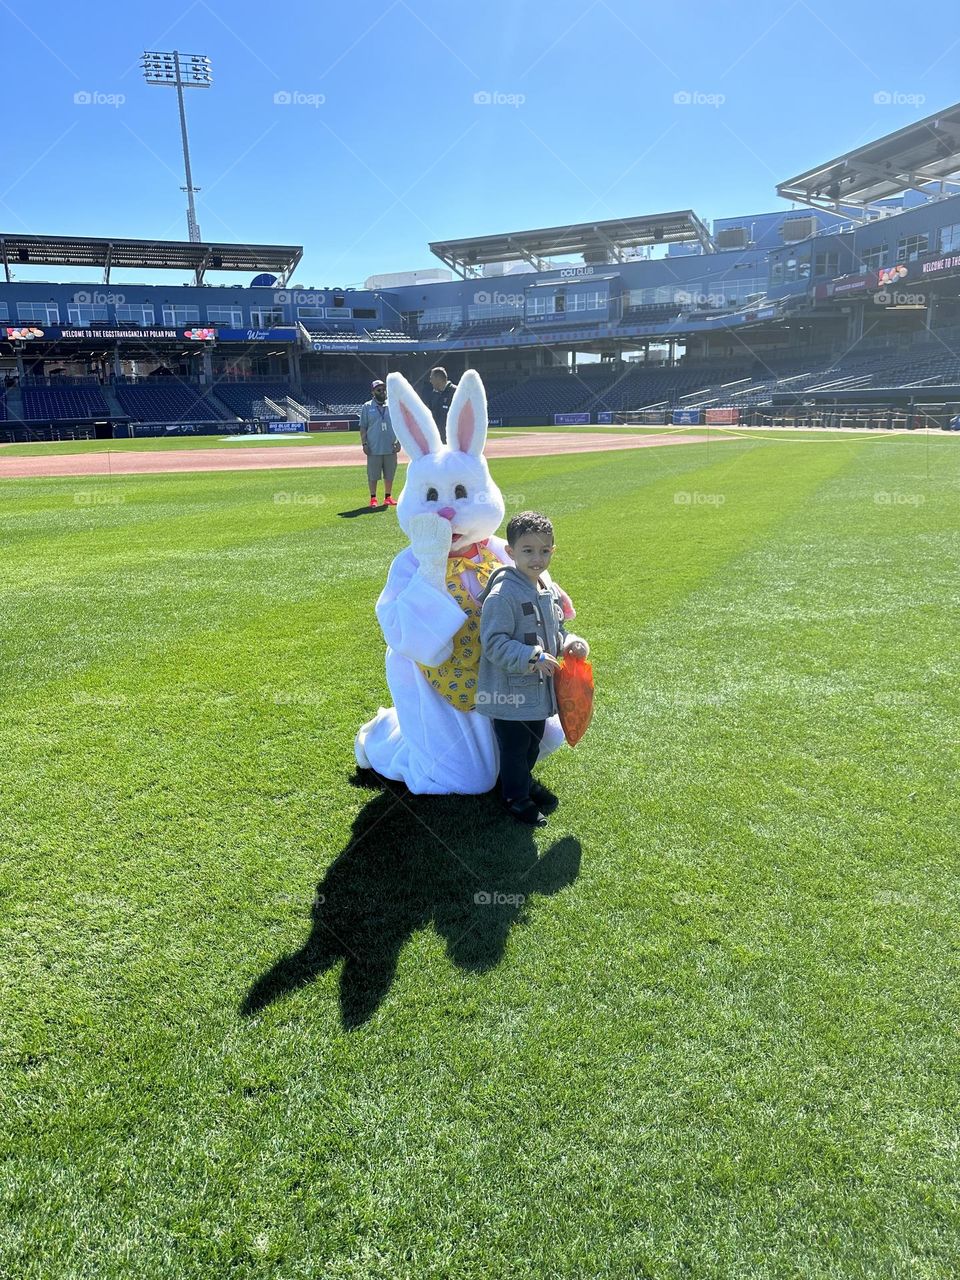 Bunny at baseball